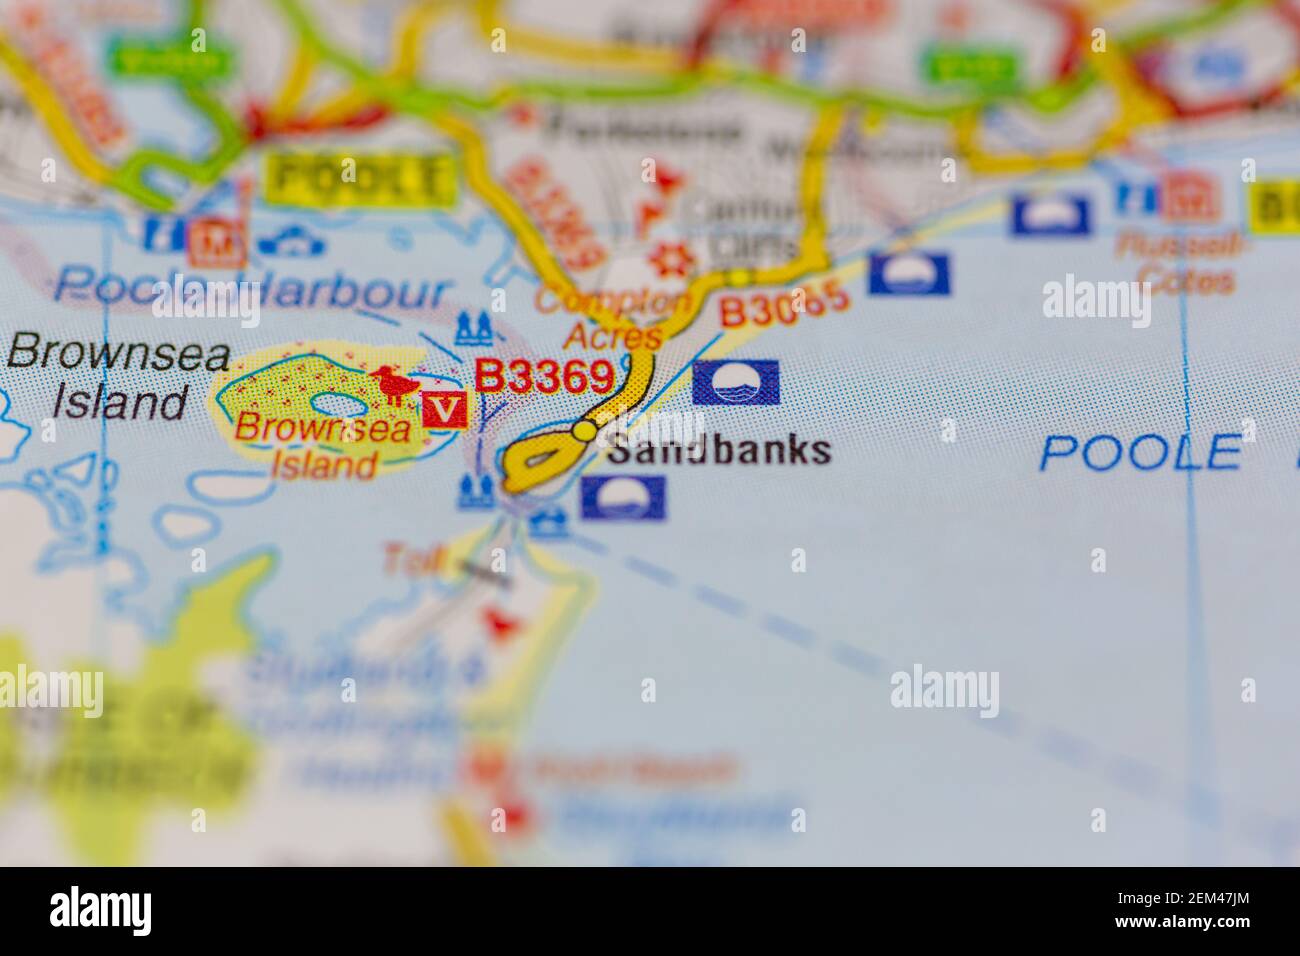 Sandbanks affichés sur une carte routière ou une carte géographique Banque D'Images